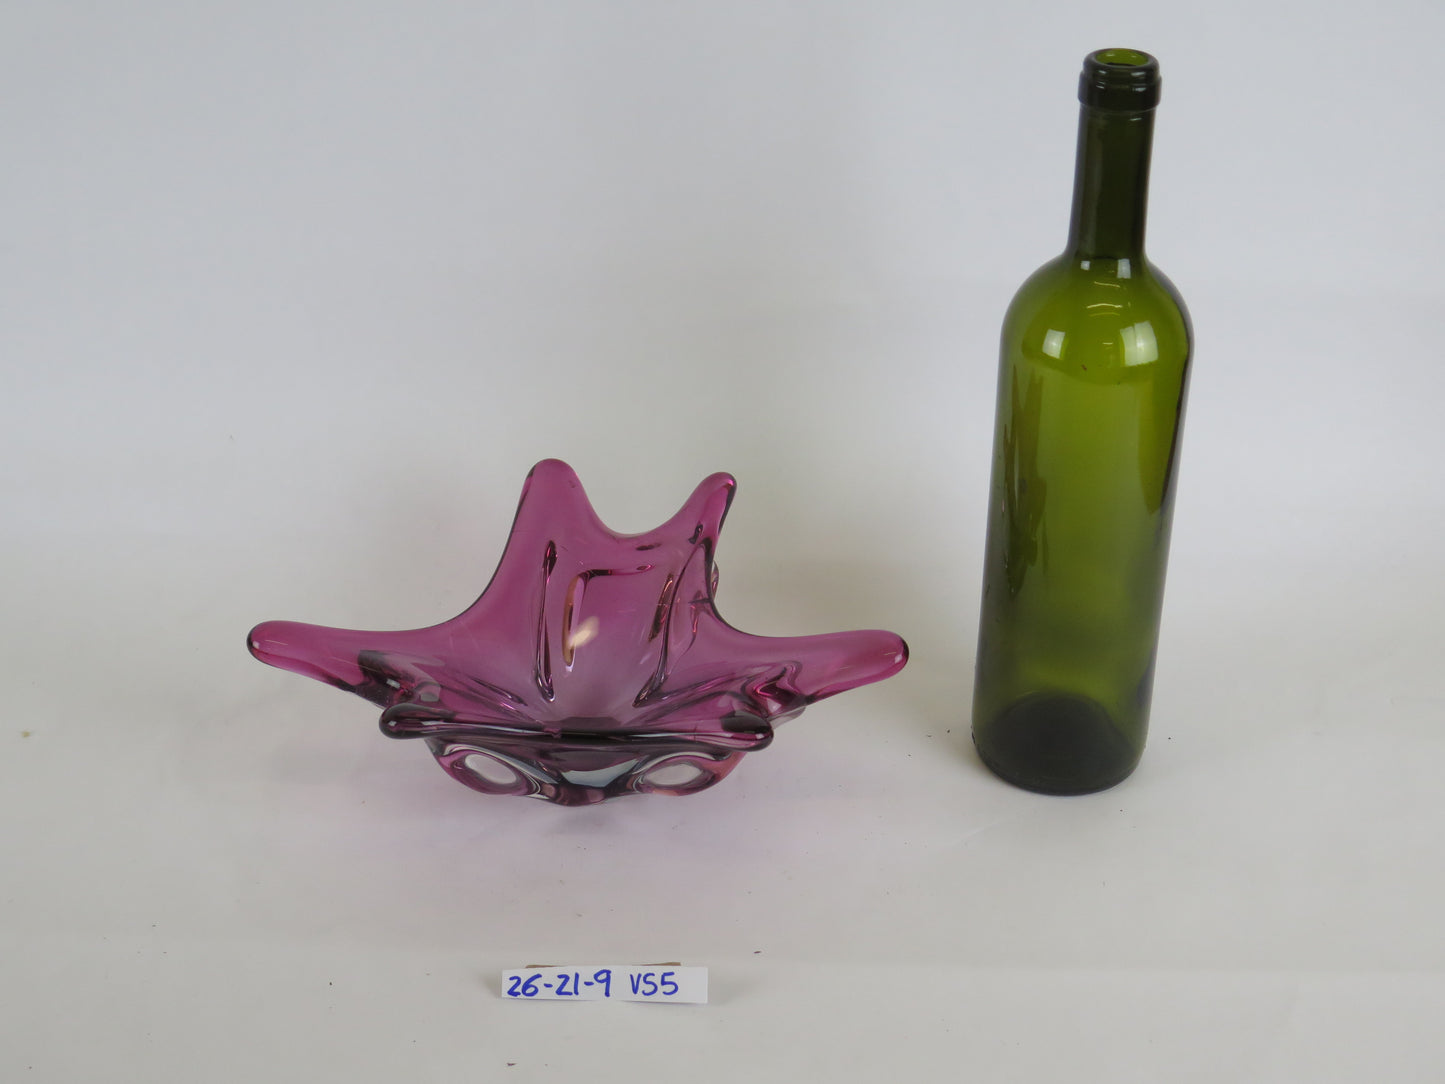 VINTAGE PURPLE GLASS CUP VASE BOWL CENTERPIECE DESIGN VS5